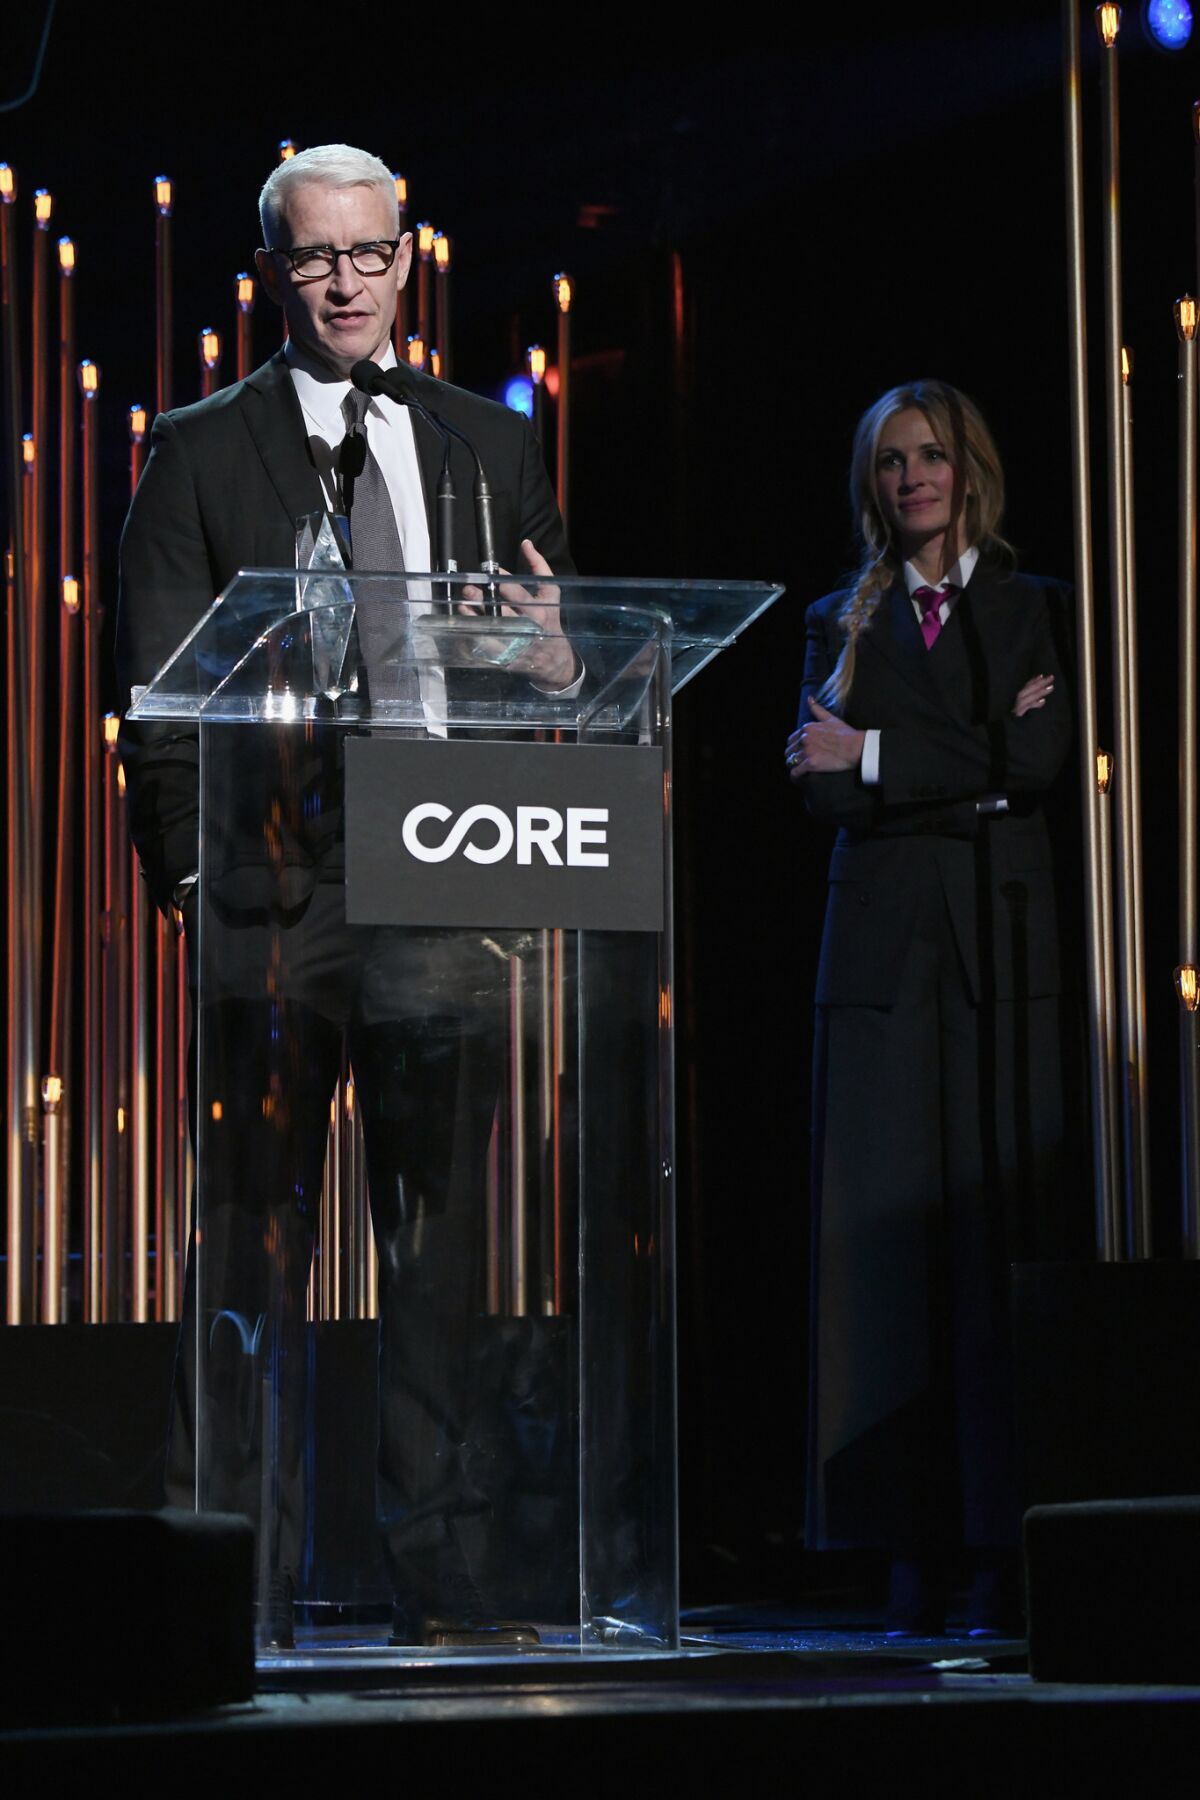 Honoree Anderson Cooper speaks onstage as Julia Roberts looks on at Sean Penn's CORE gala.